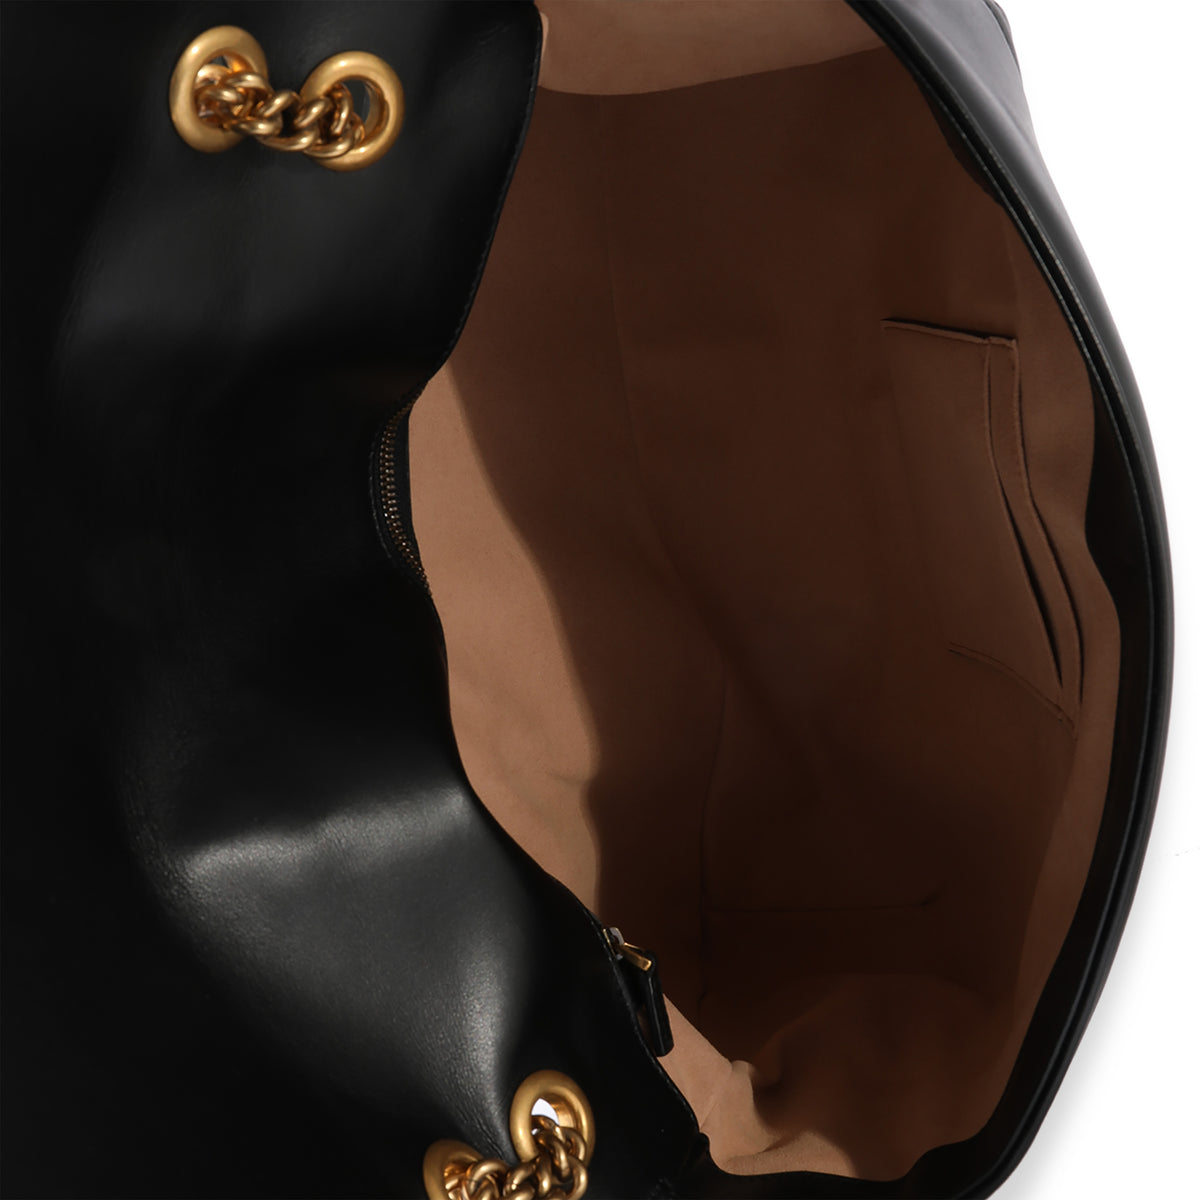 Gucci Black Matelassé Leather Large Marmont Shoulder Bag